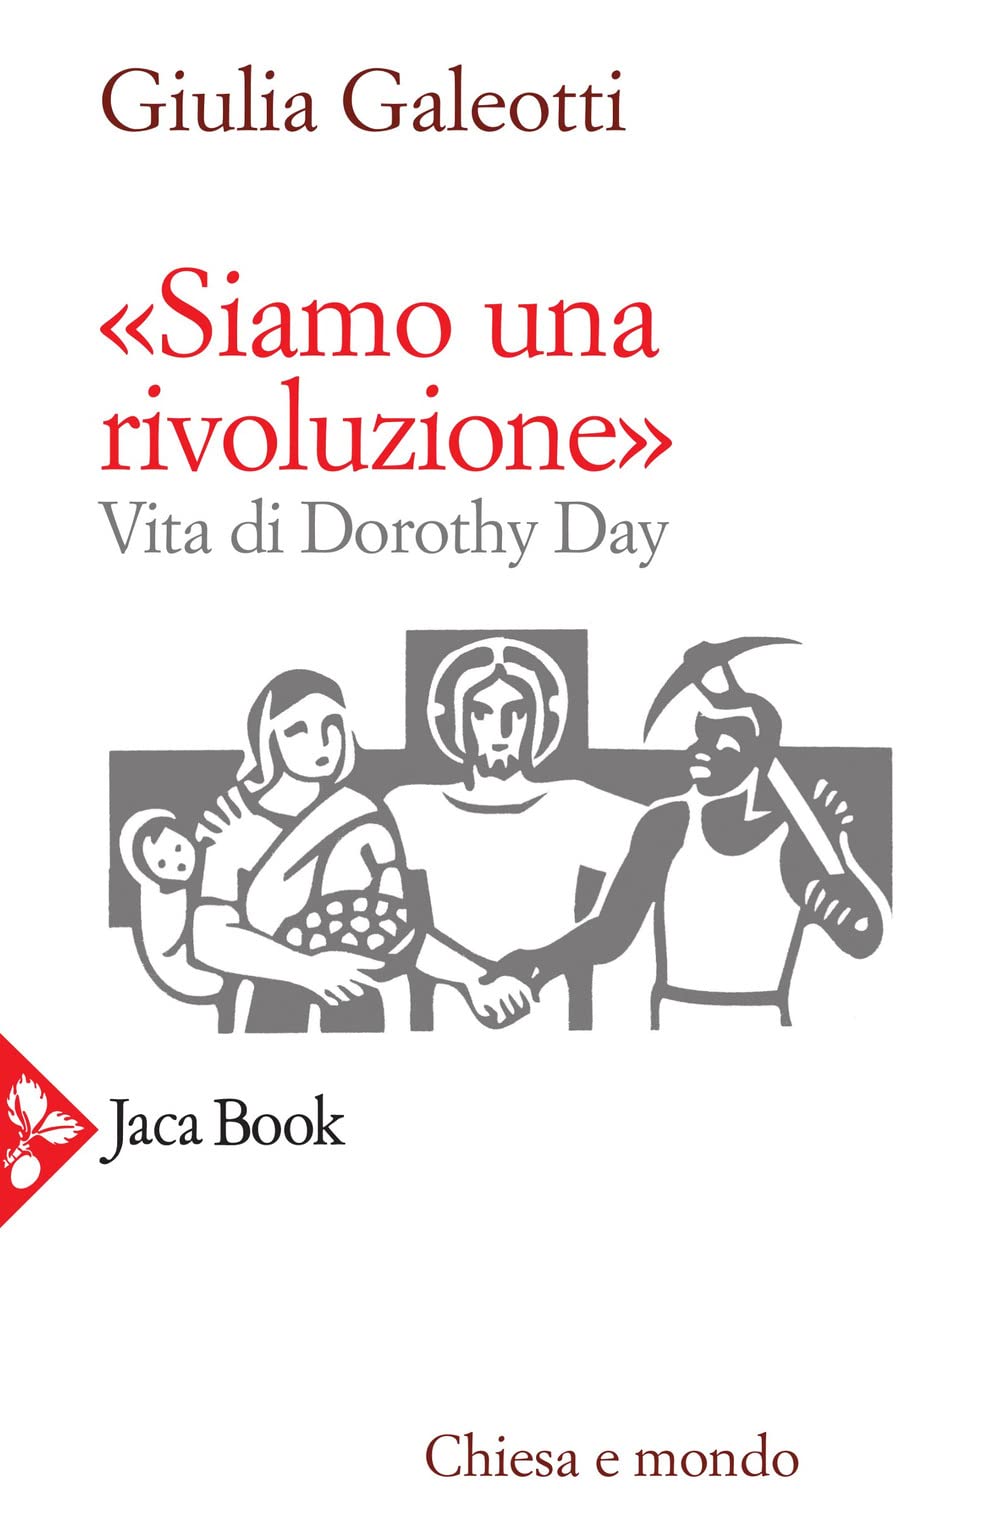 «Siamo una rivoluzione» Vita di Dorothy Day - Giulia Galeotti (Jacabook, 2022)